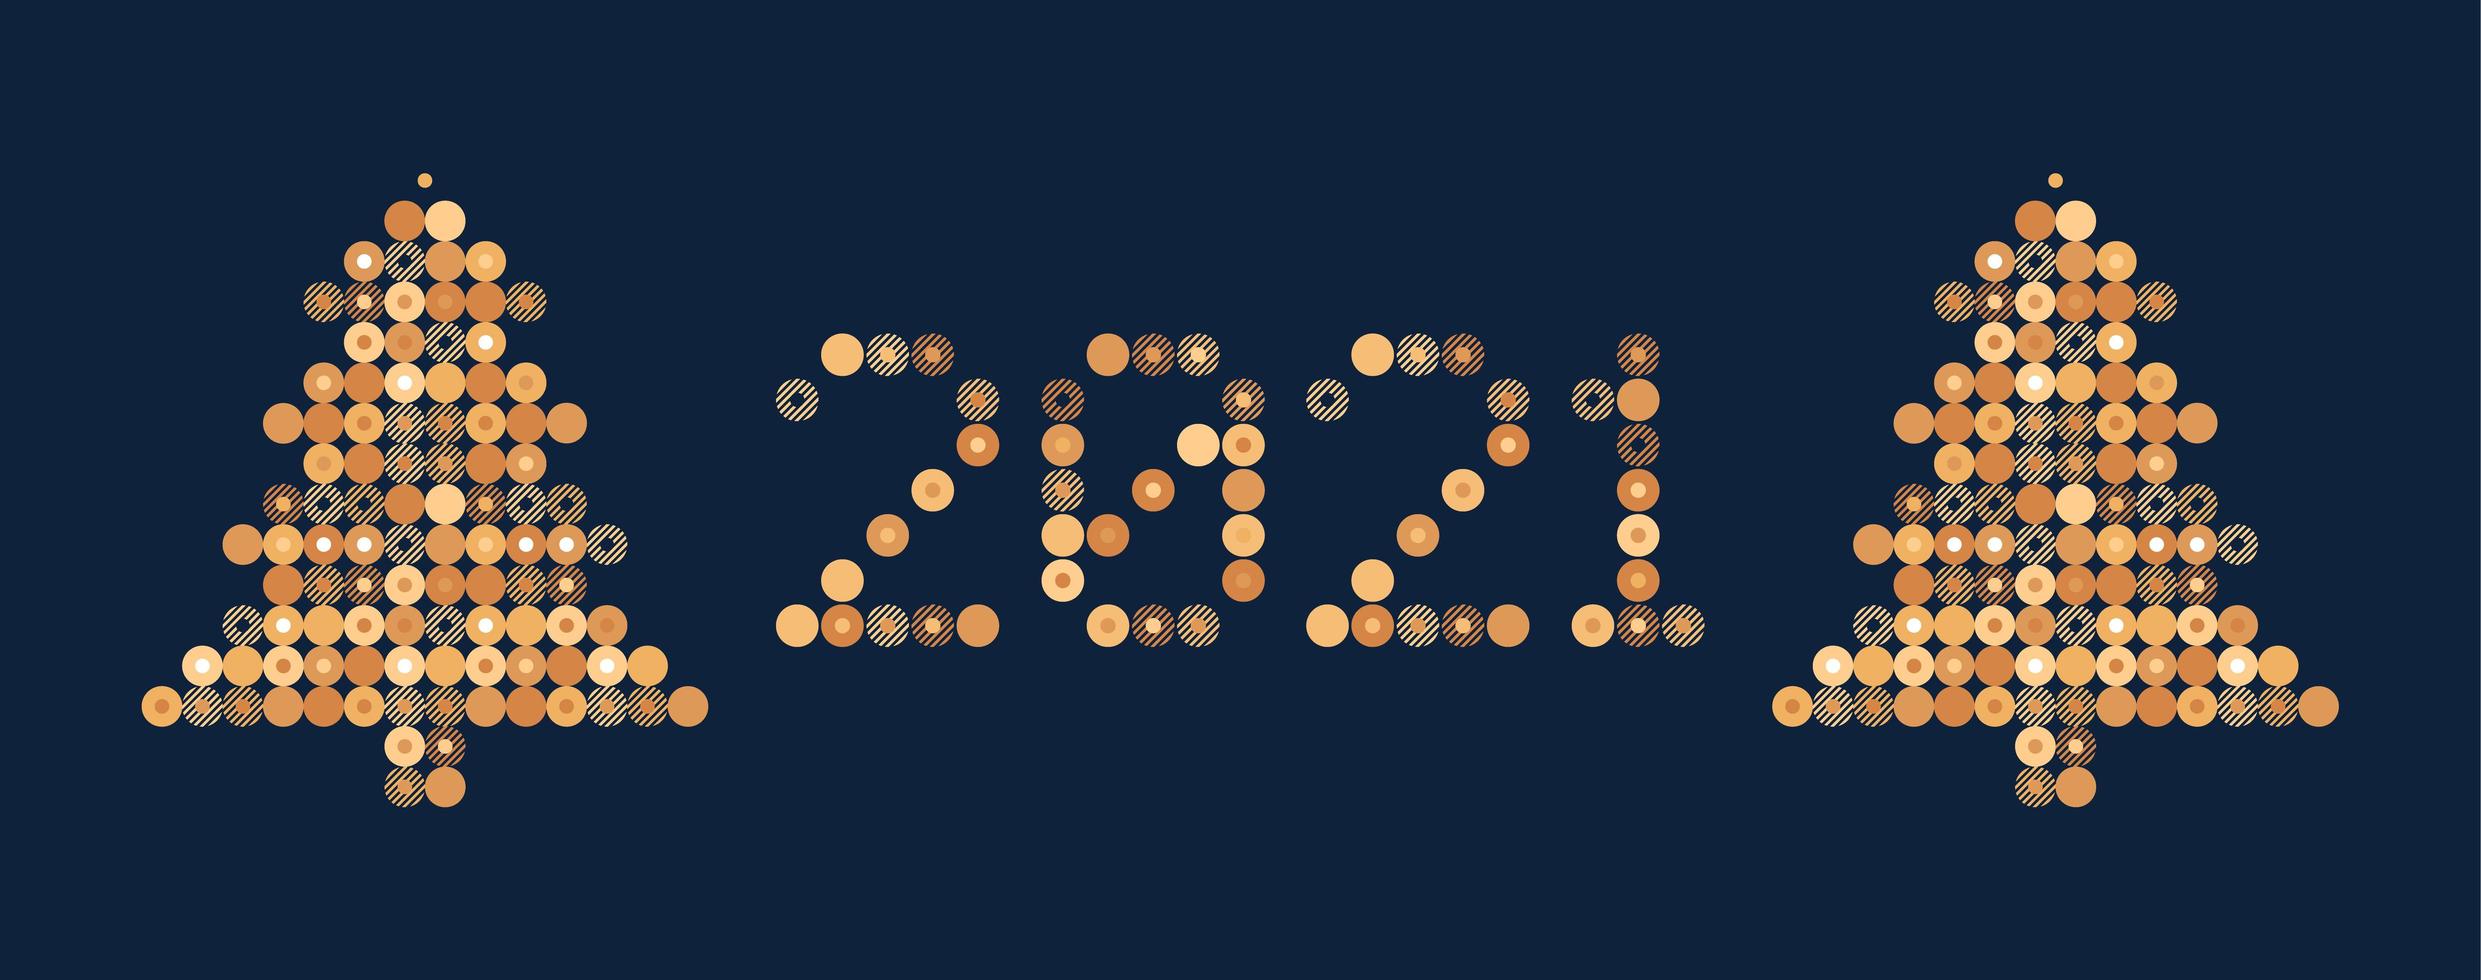 gott nytt år 2021 vektor cirkel pixel konst typografi. helgdag gratulationskort illustration med träd. bokstäver från remsor, cirkel och prickar. geometriska nyårsaffischer som elektronisk resultattavla.